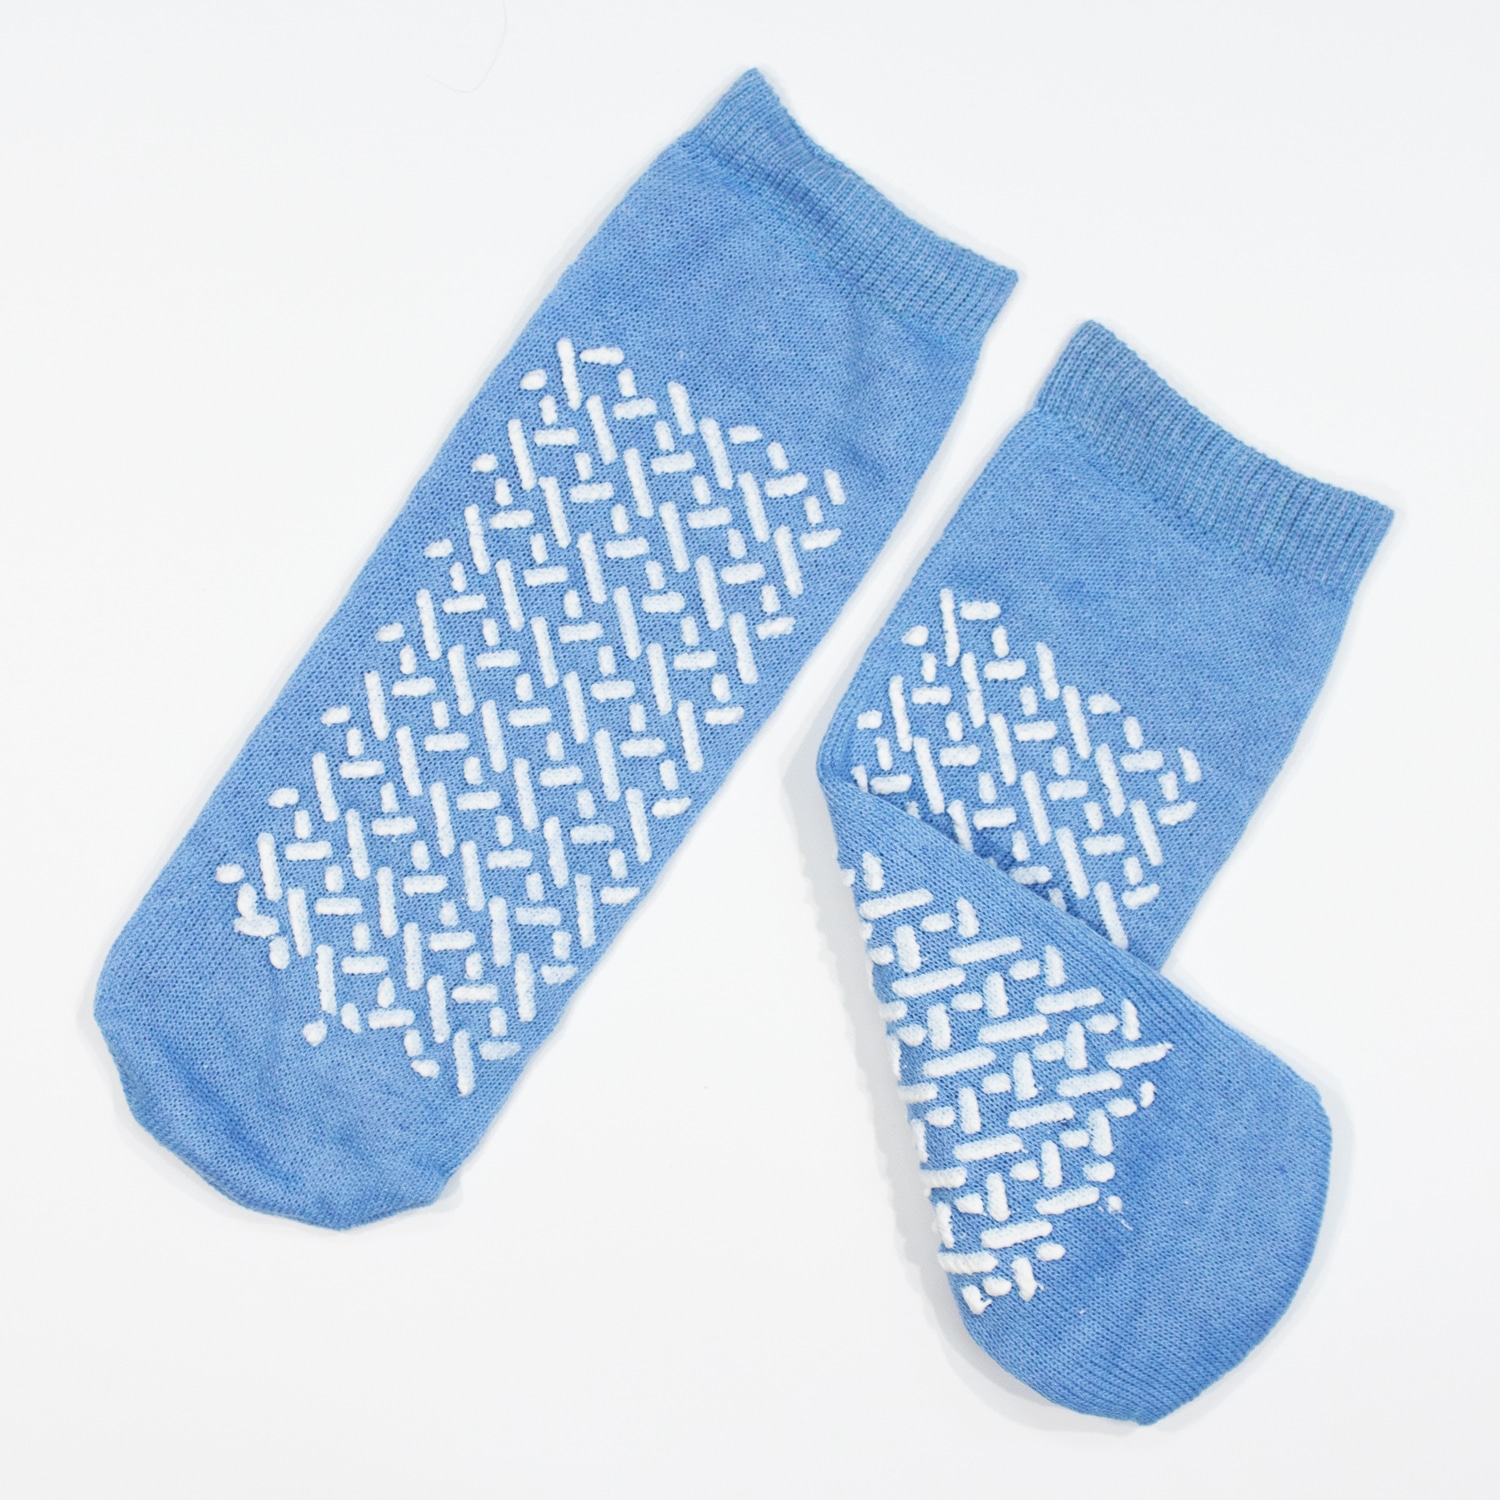 Double Tread Slipper Socks, Hospital Socks, COTTON/REGULAR FITS ALL-NONSKID